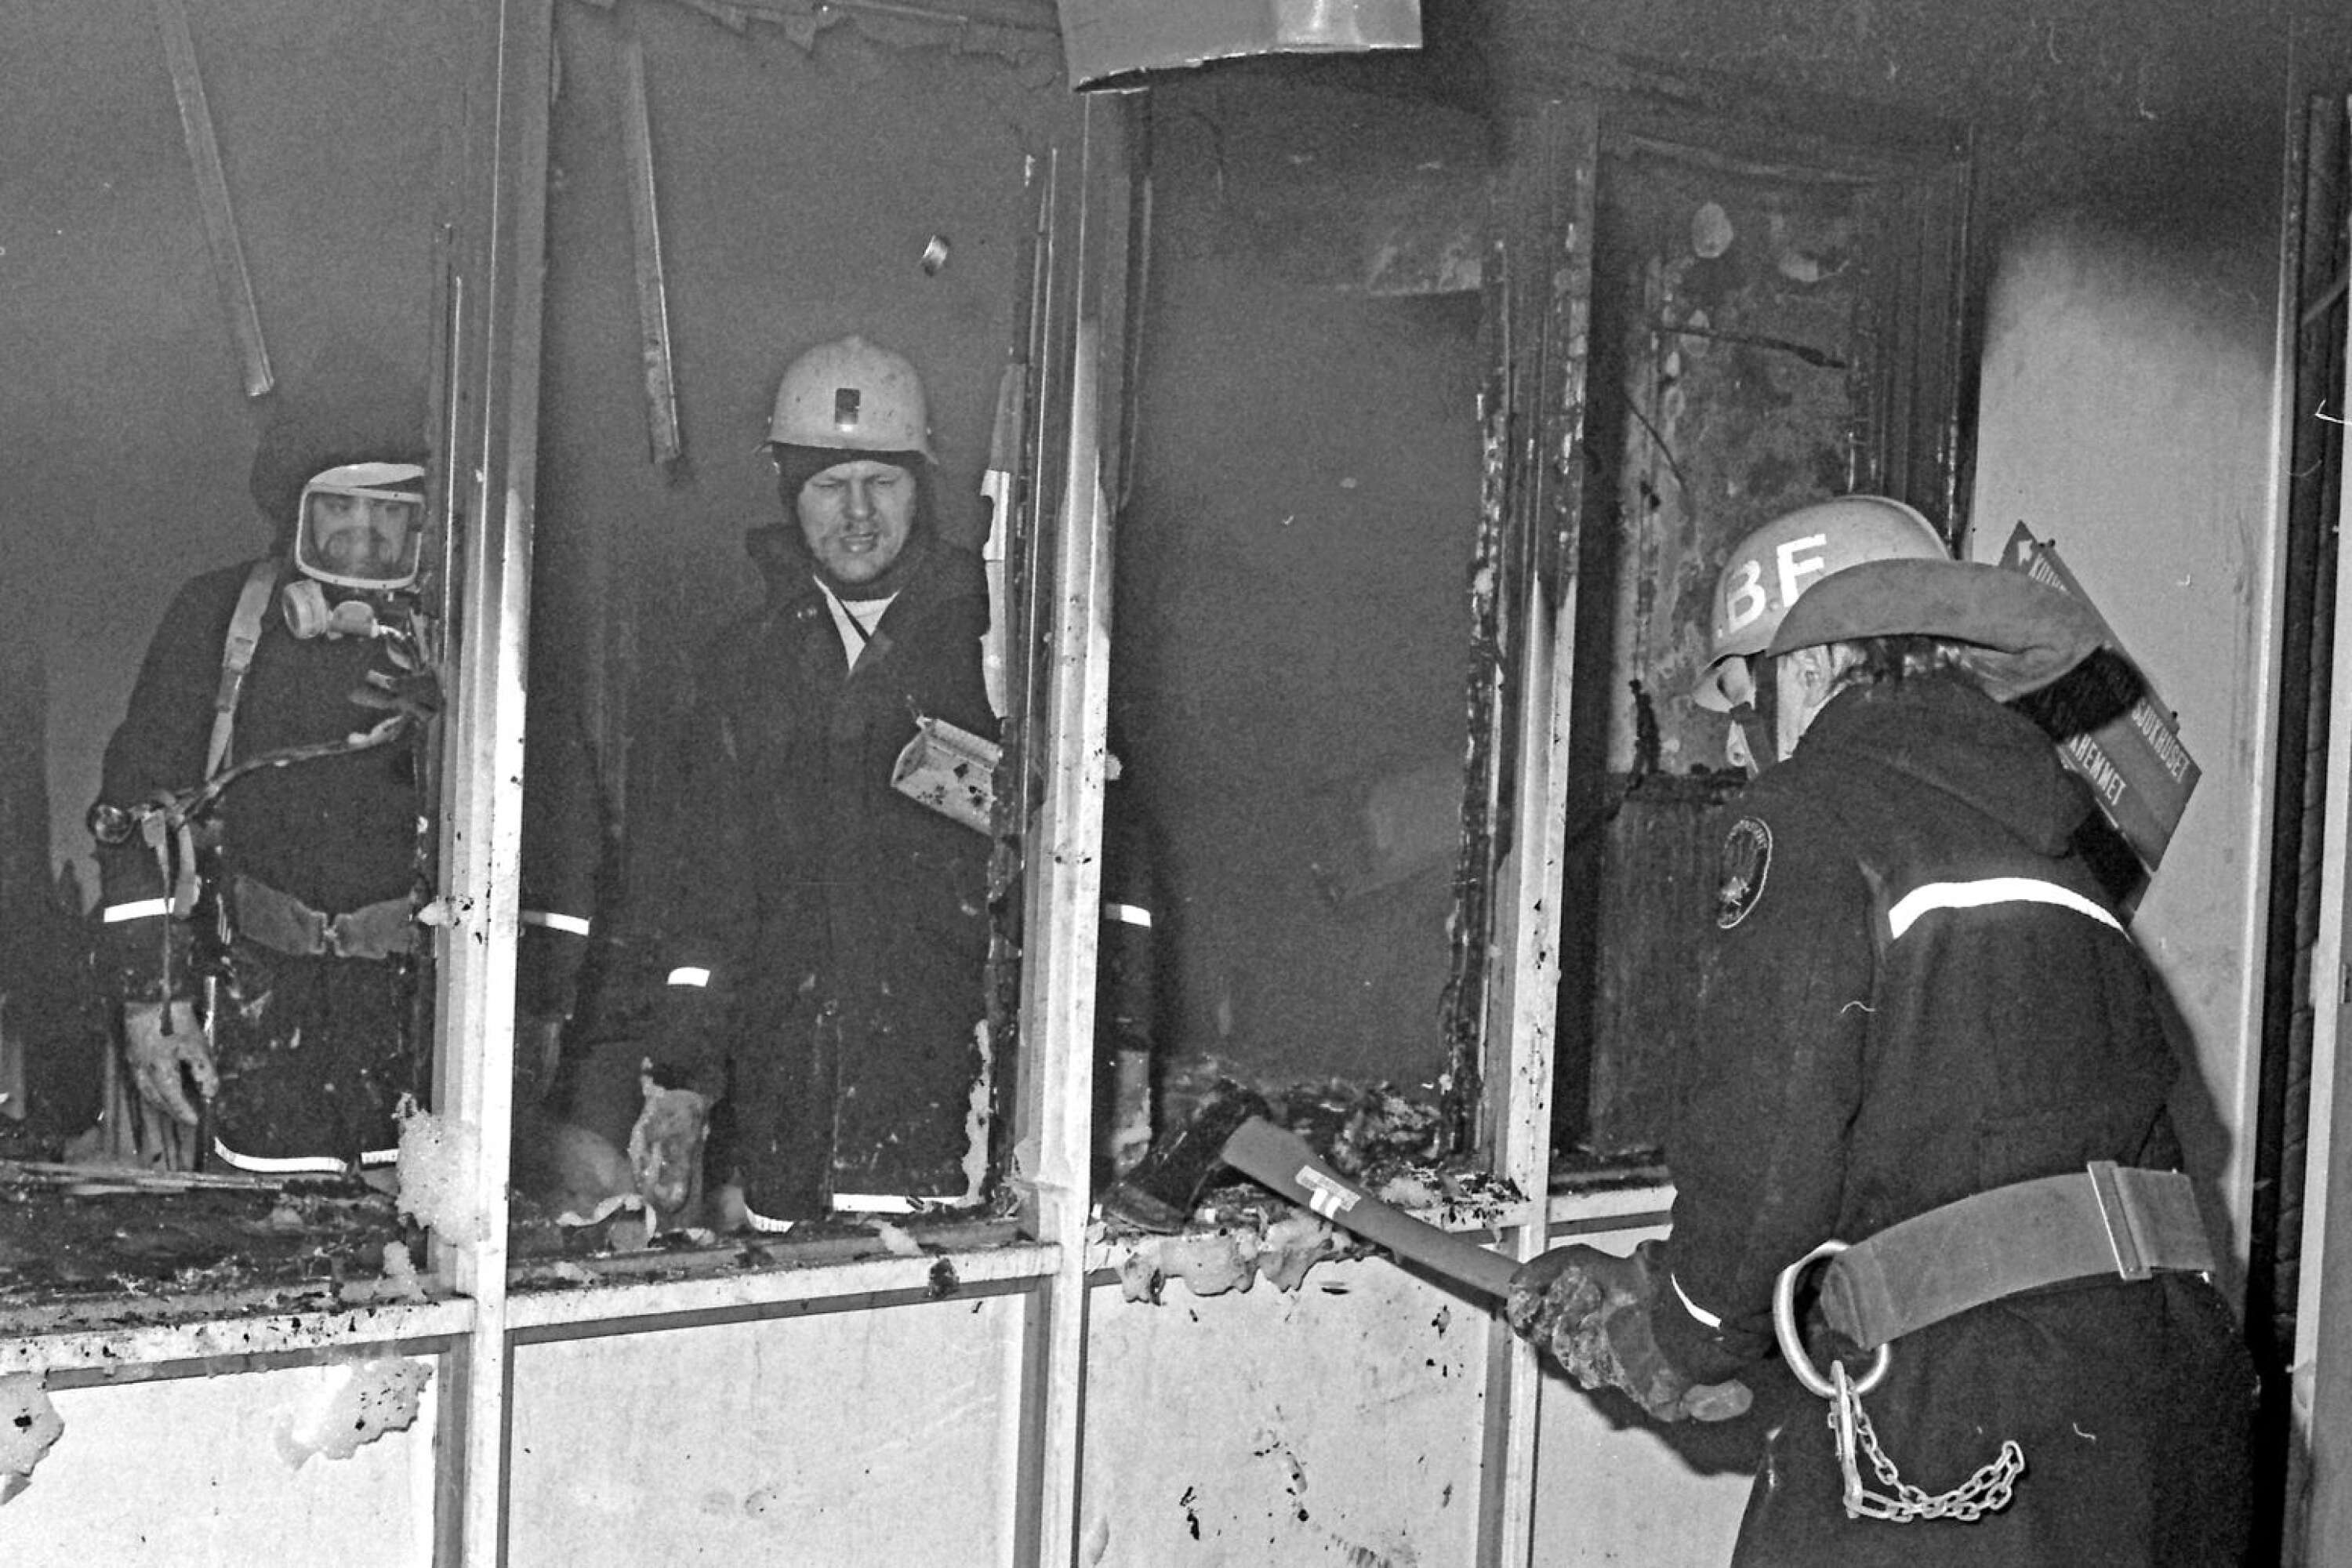 En dramatisk brand inträffade 1985 i sjukhuset i Säffle. Det var dramatiskt eftersom det i sjukhuset vid tillfället fanns många inneliggande patienter och rök spreds i byggnaden. Elden på bottenvåningen kunde släckas, men skadorna blev omfattande. 